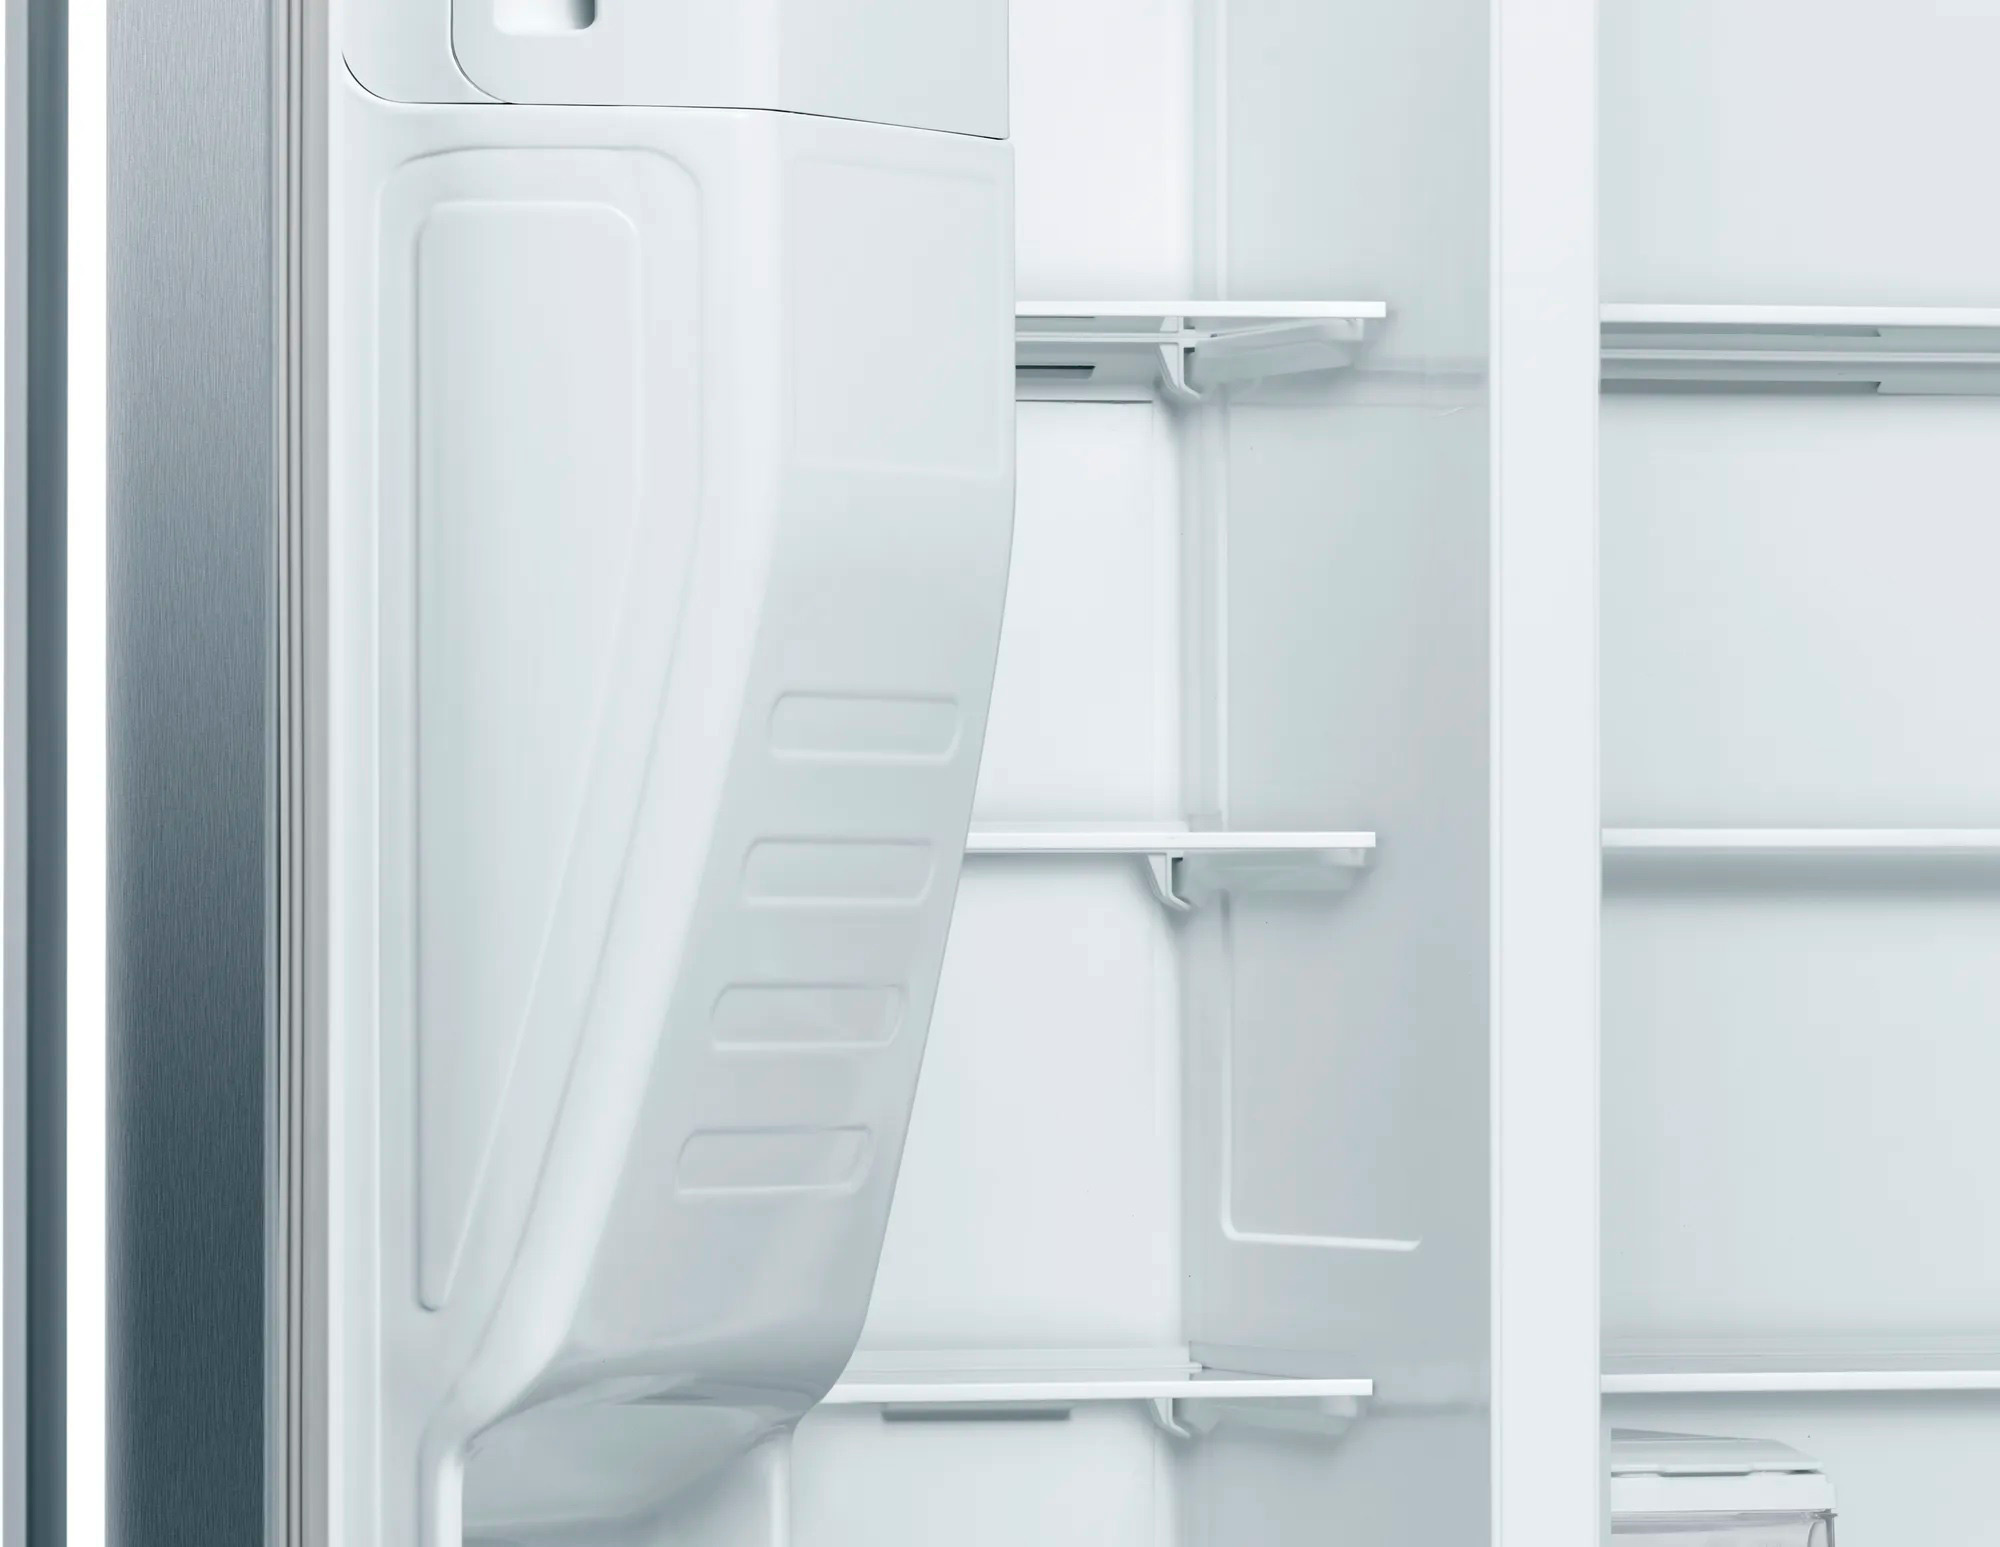 Холодильник Bosch KAI93VI304, нержавеющая сталь 